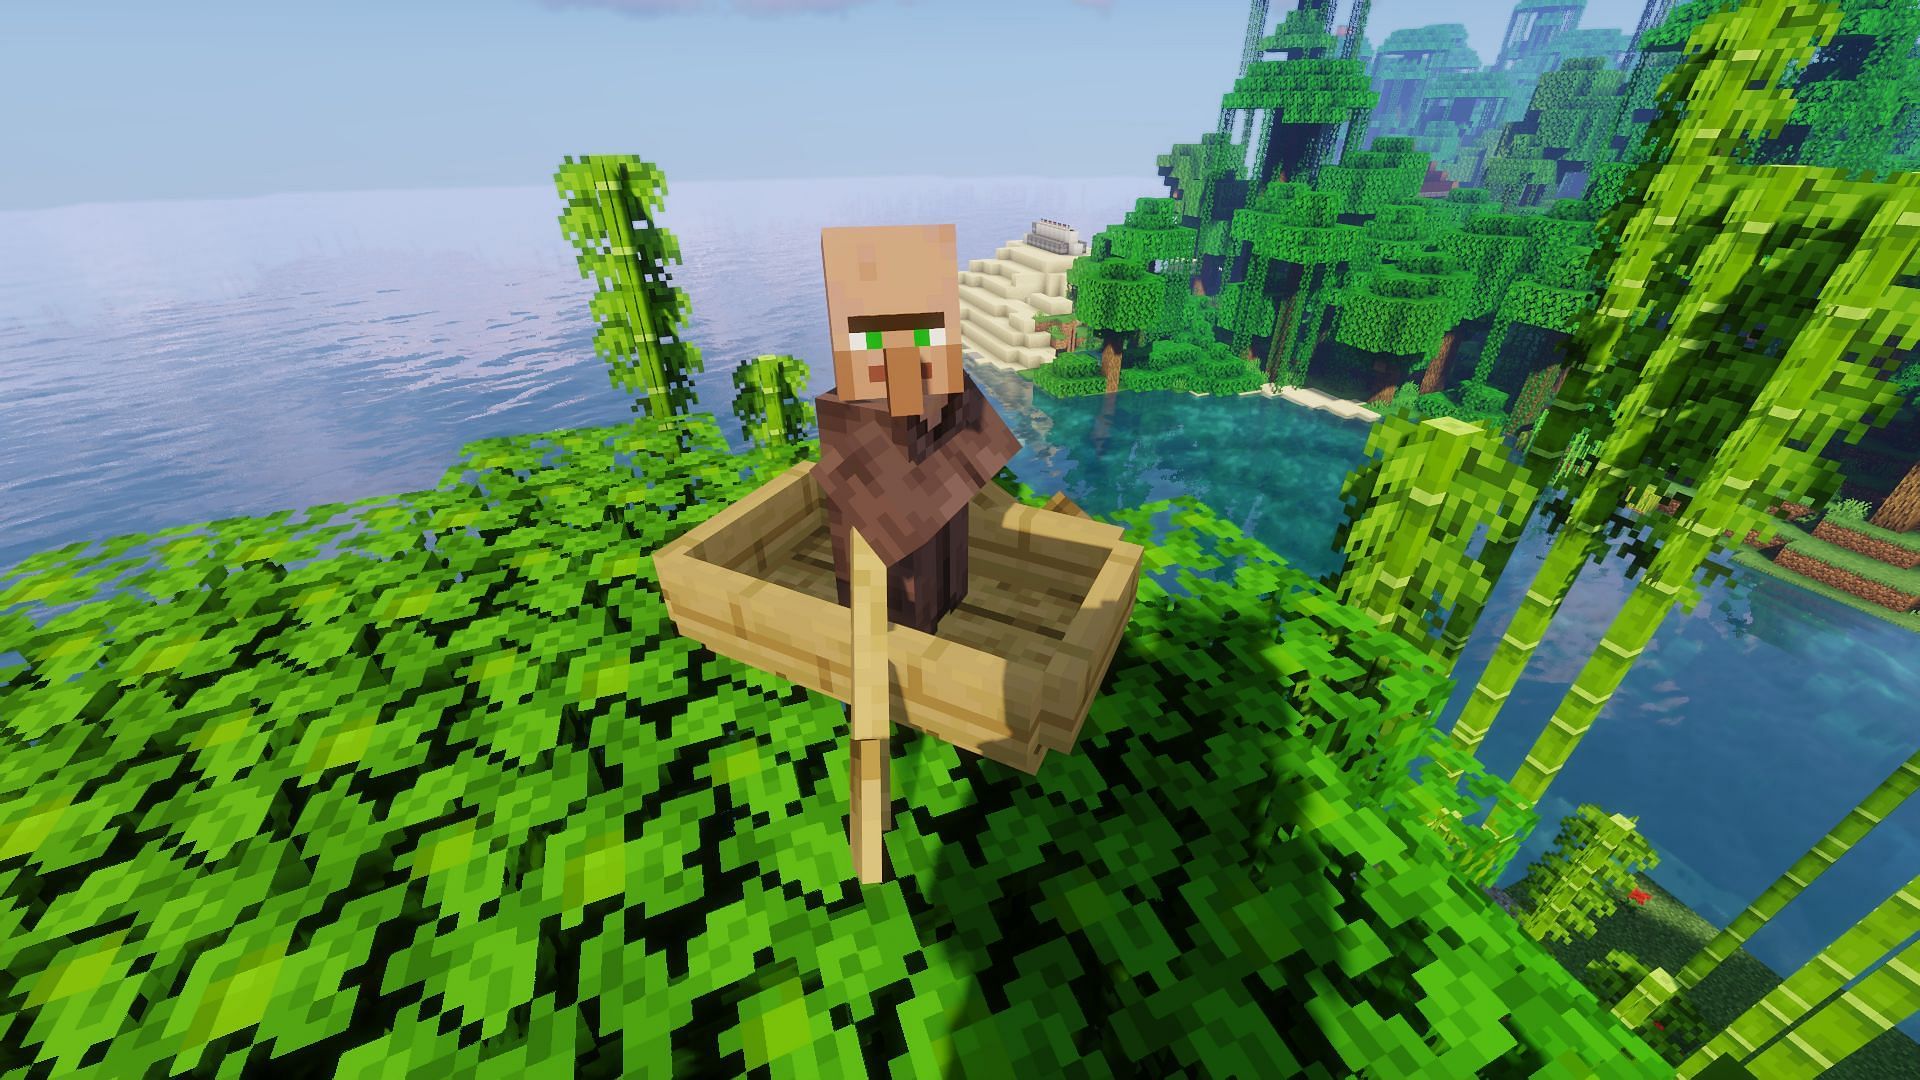 एक नाव में एक ग्रामीण का उदाहरण (Minecraft के माध्यम से छवि)